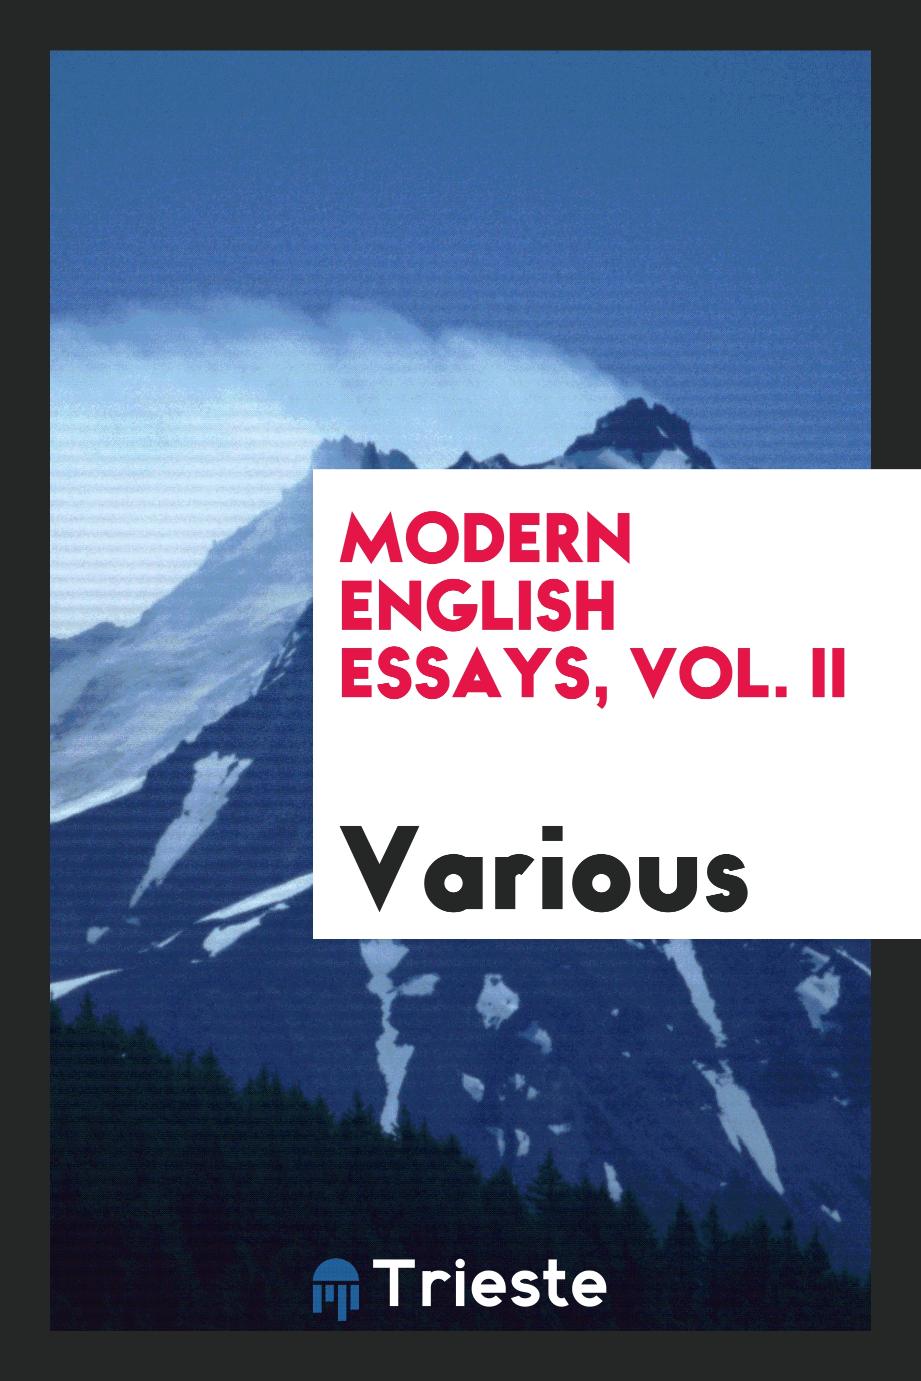 Modern English essays, Vol. II